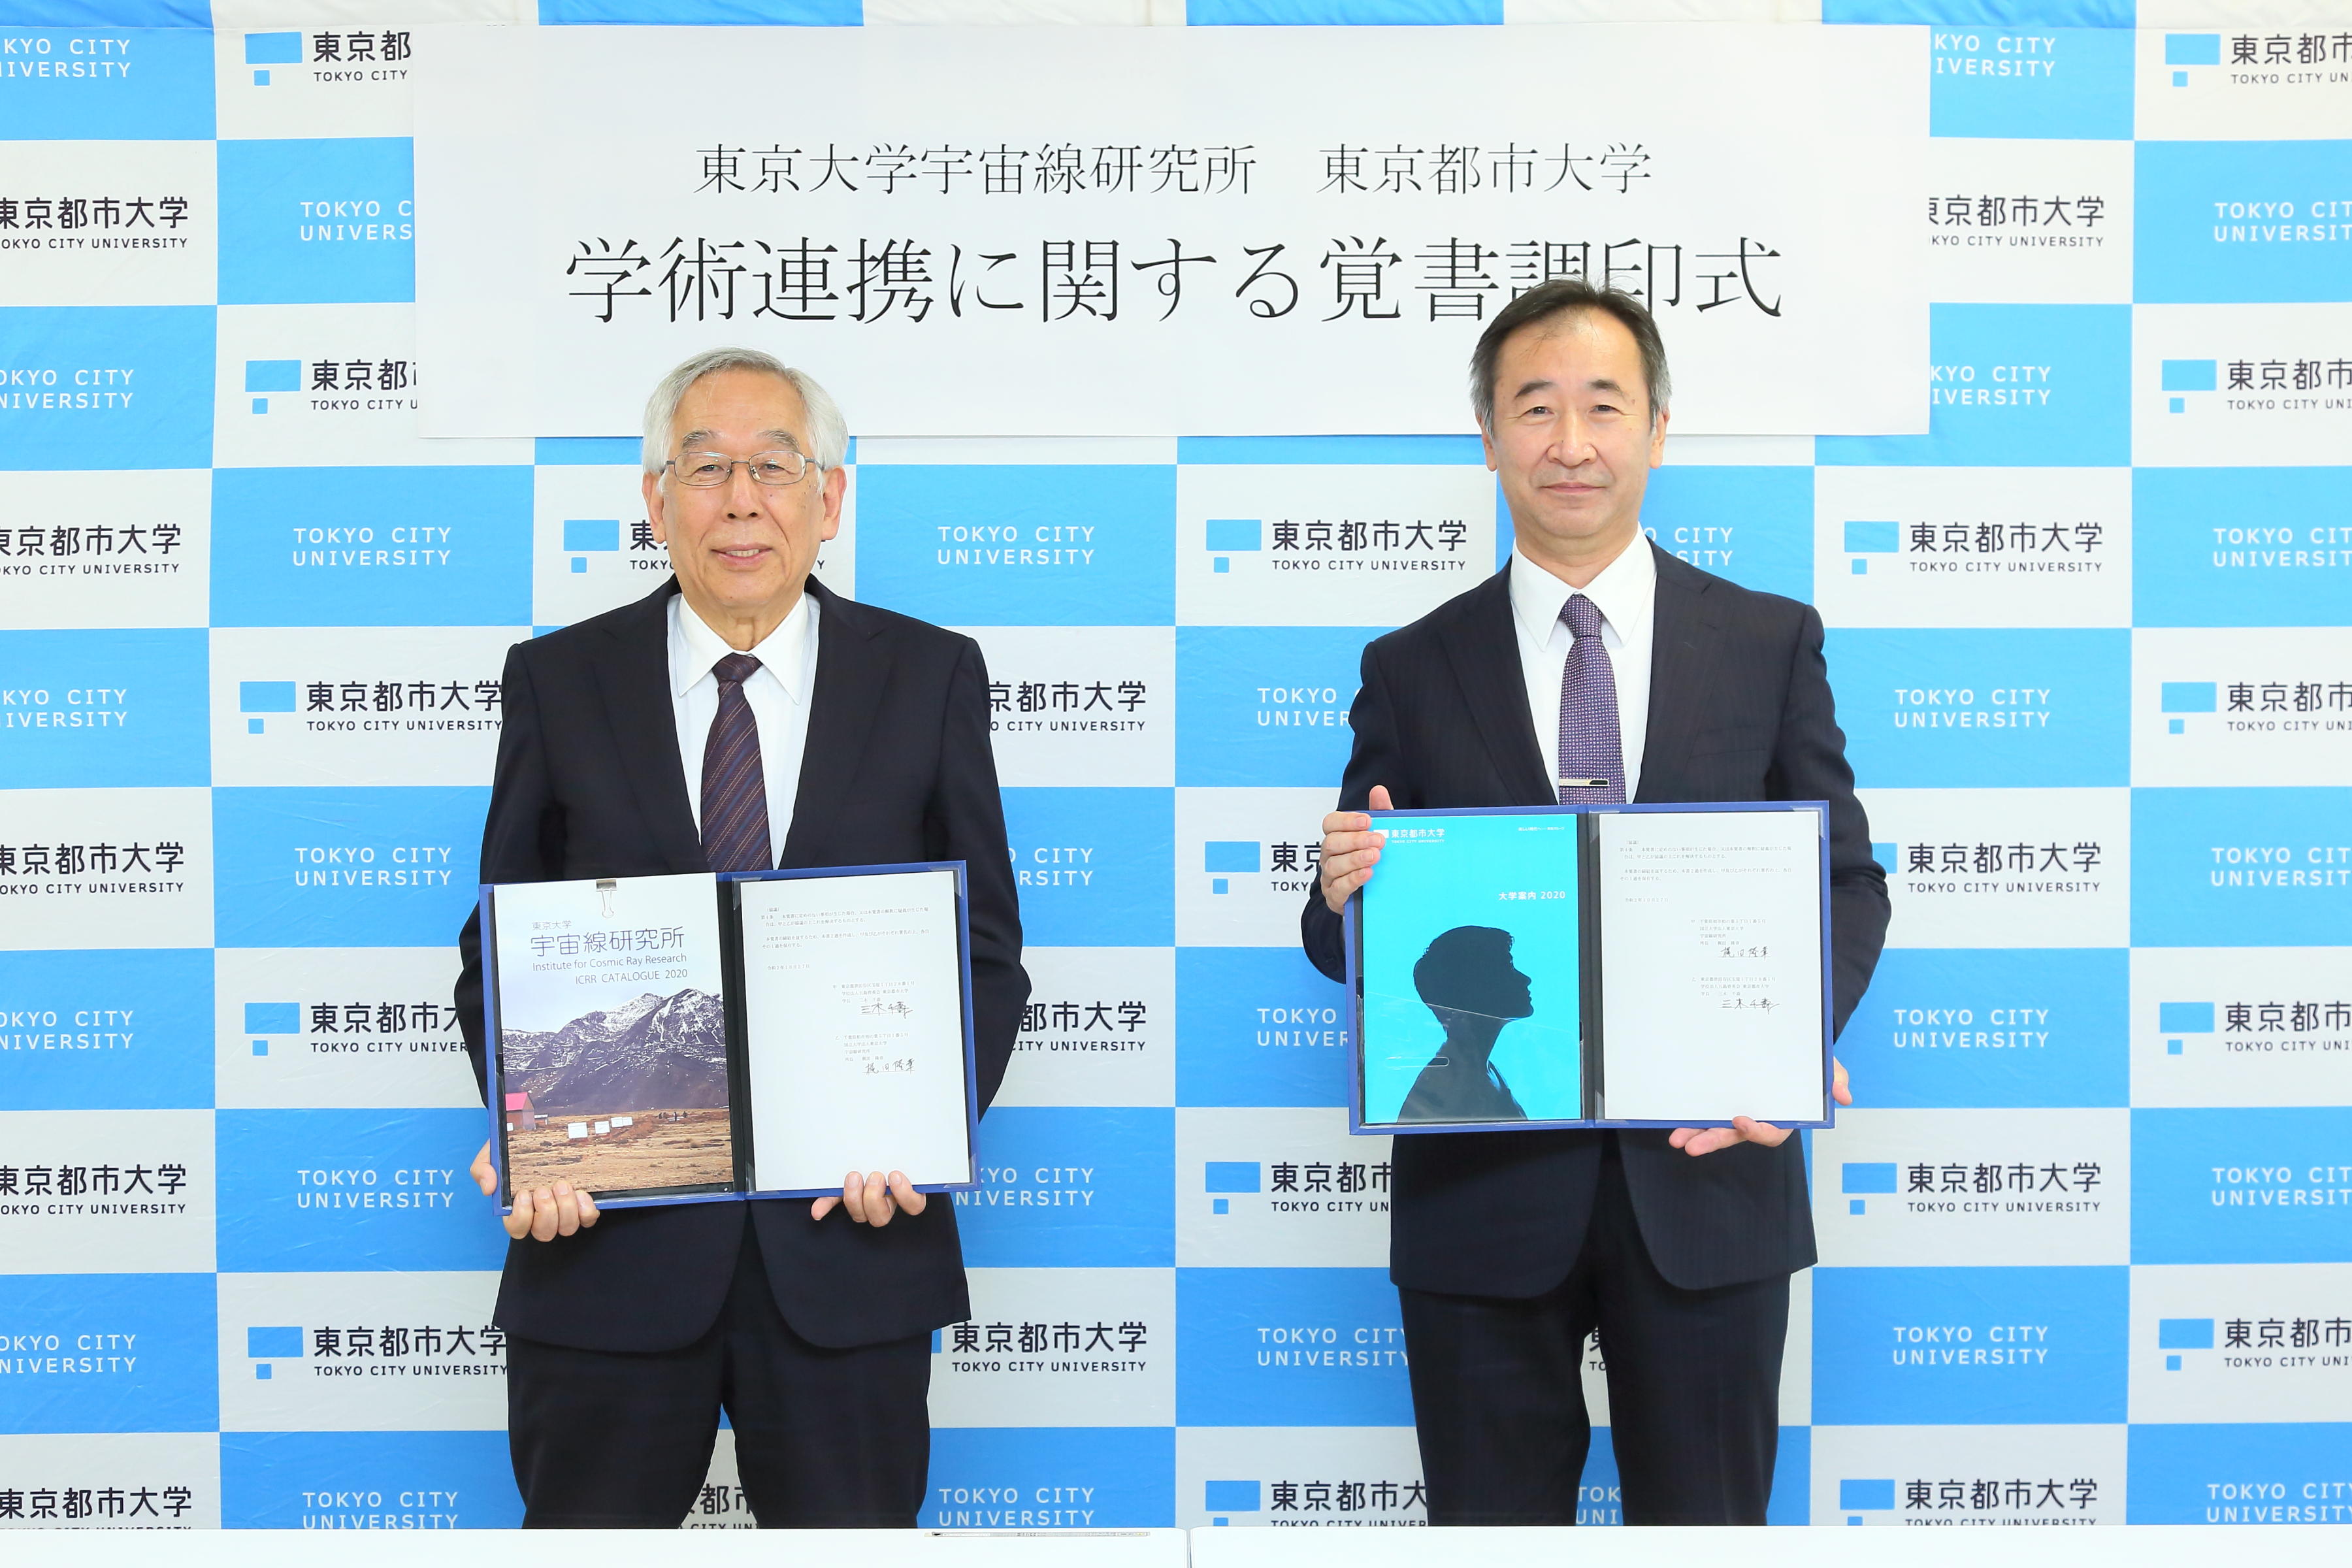 東京大学宇宙線研究所と東京都市大学が学術連携協定を締結 